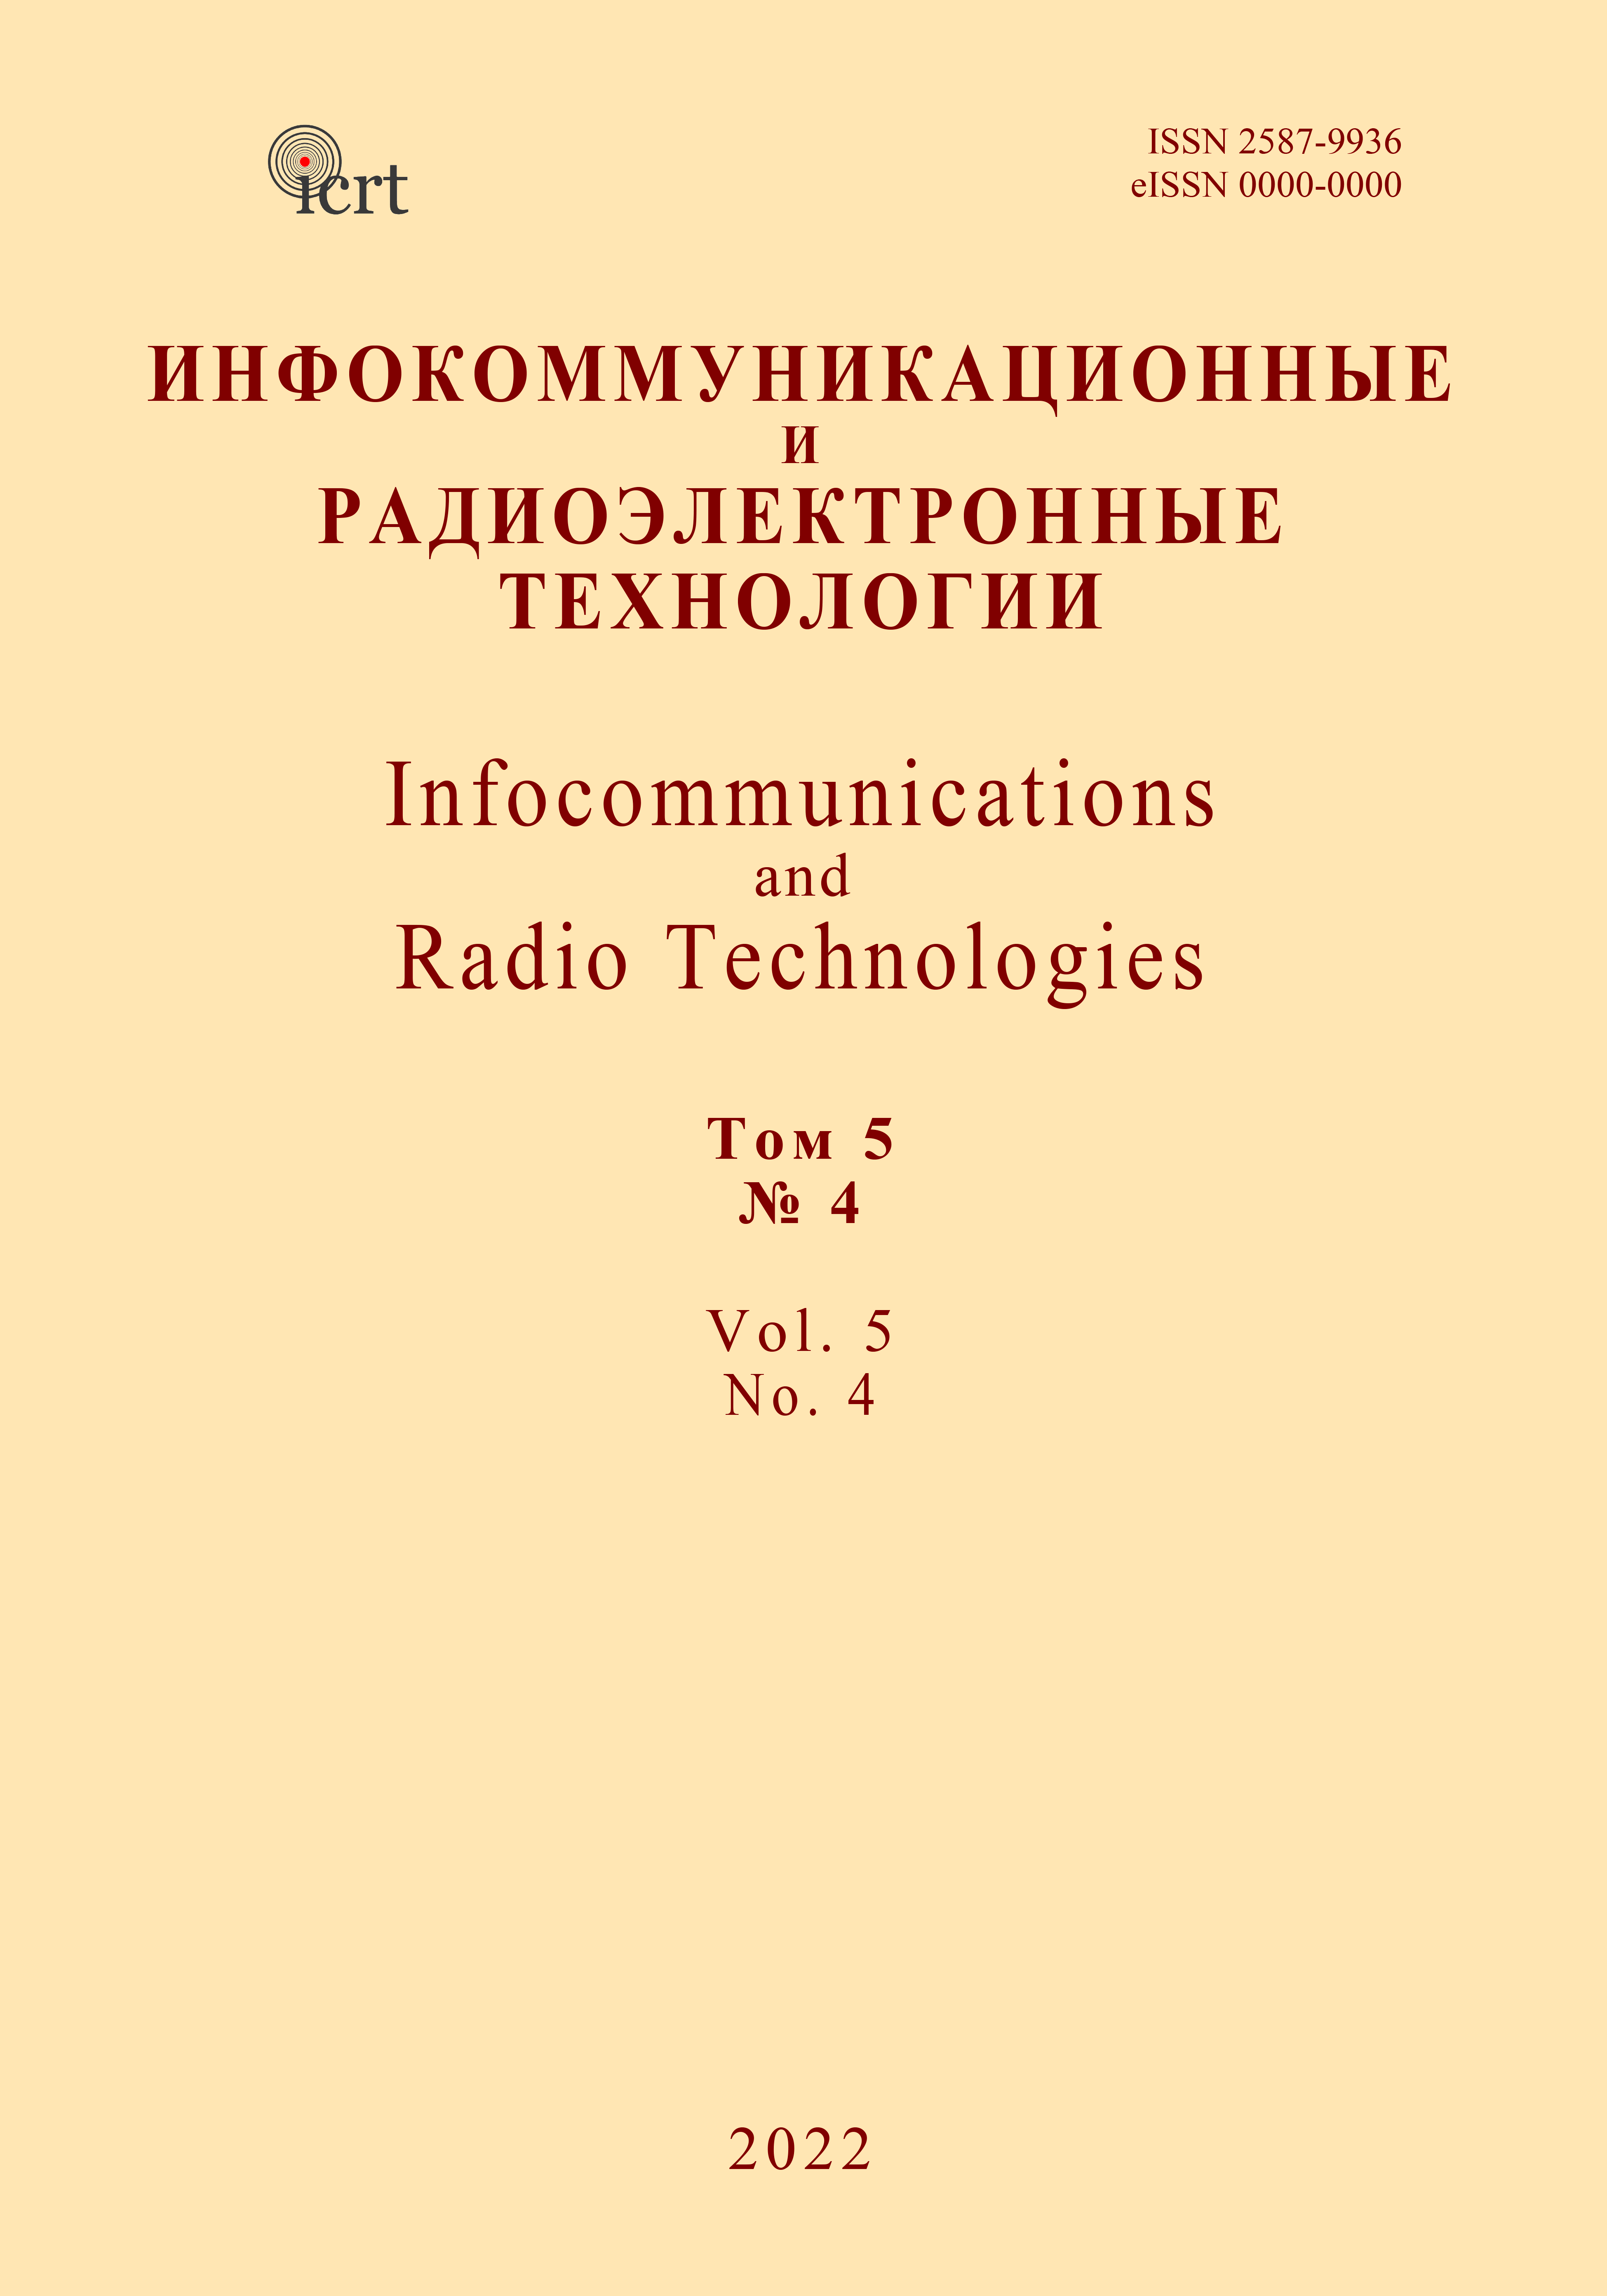             Конструкторская деятельность  крымских радиолюбителей
    